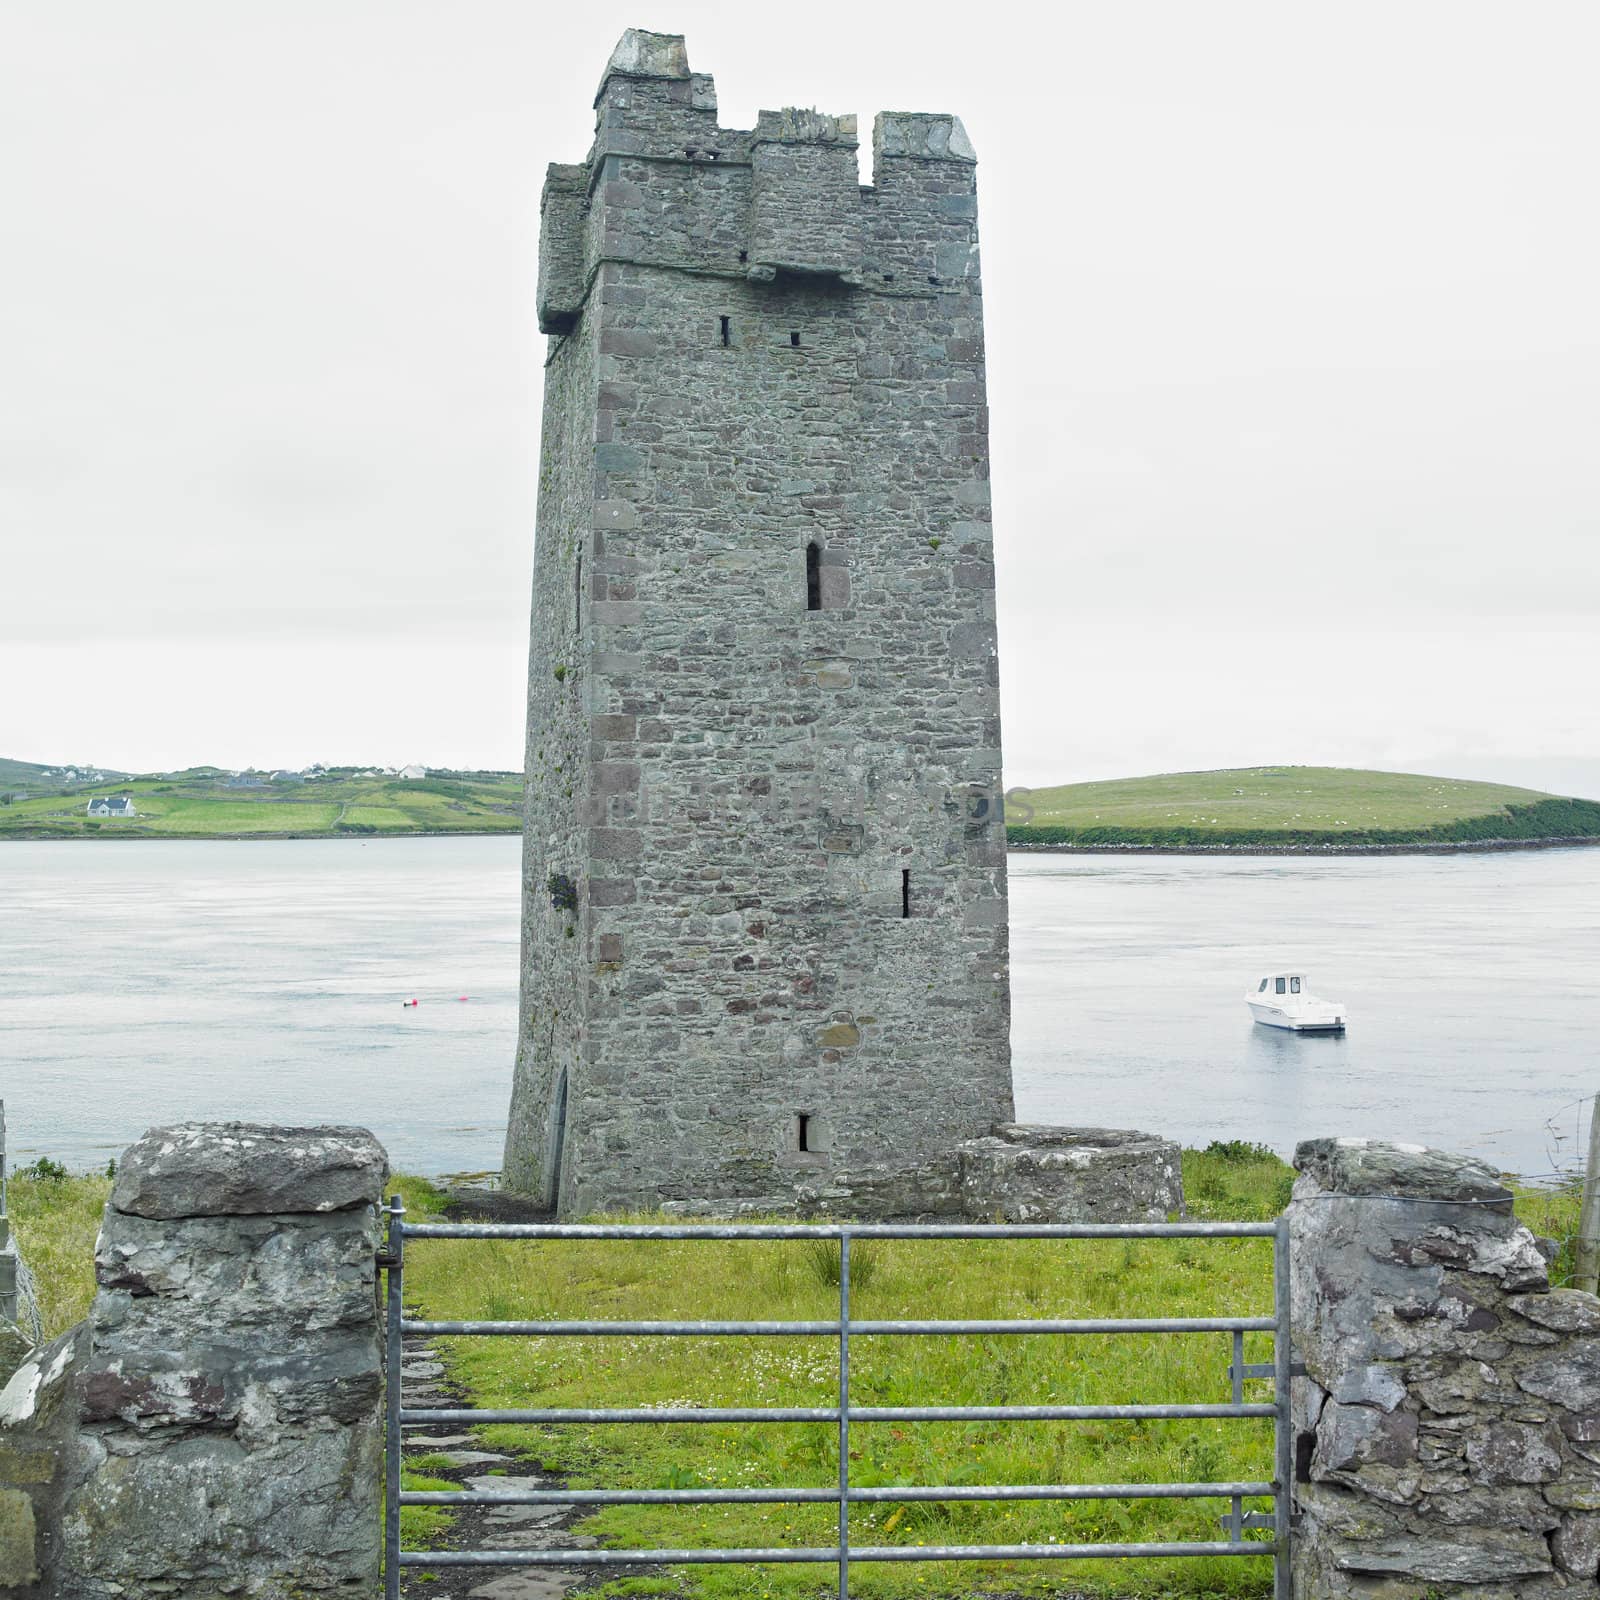 Carrick Kildarnet Castle, Achill Island, County Mayo, Ireland by phbcz